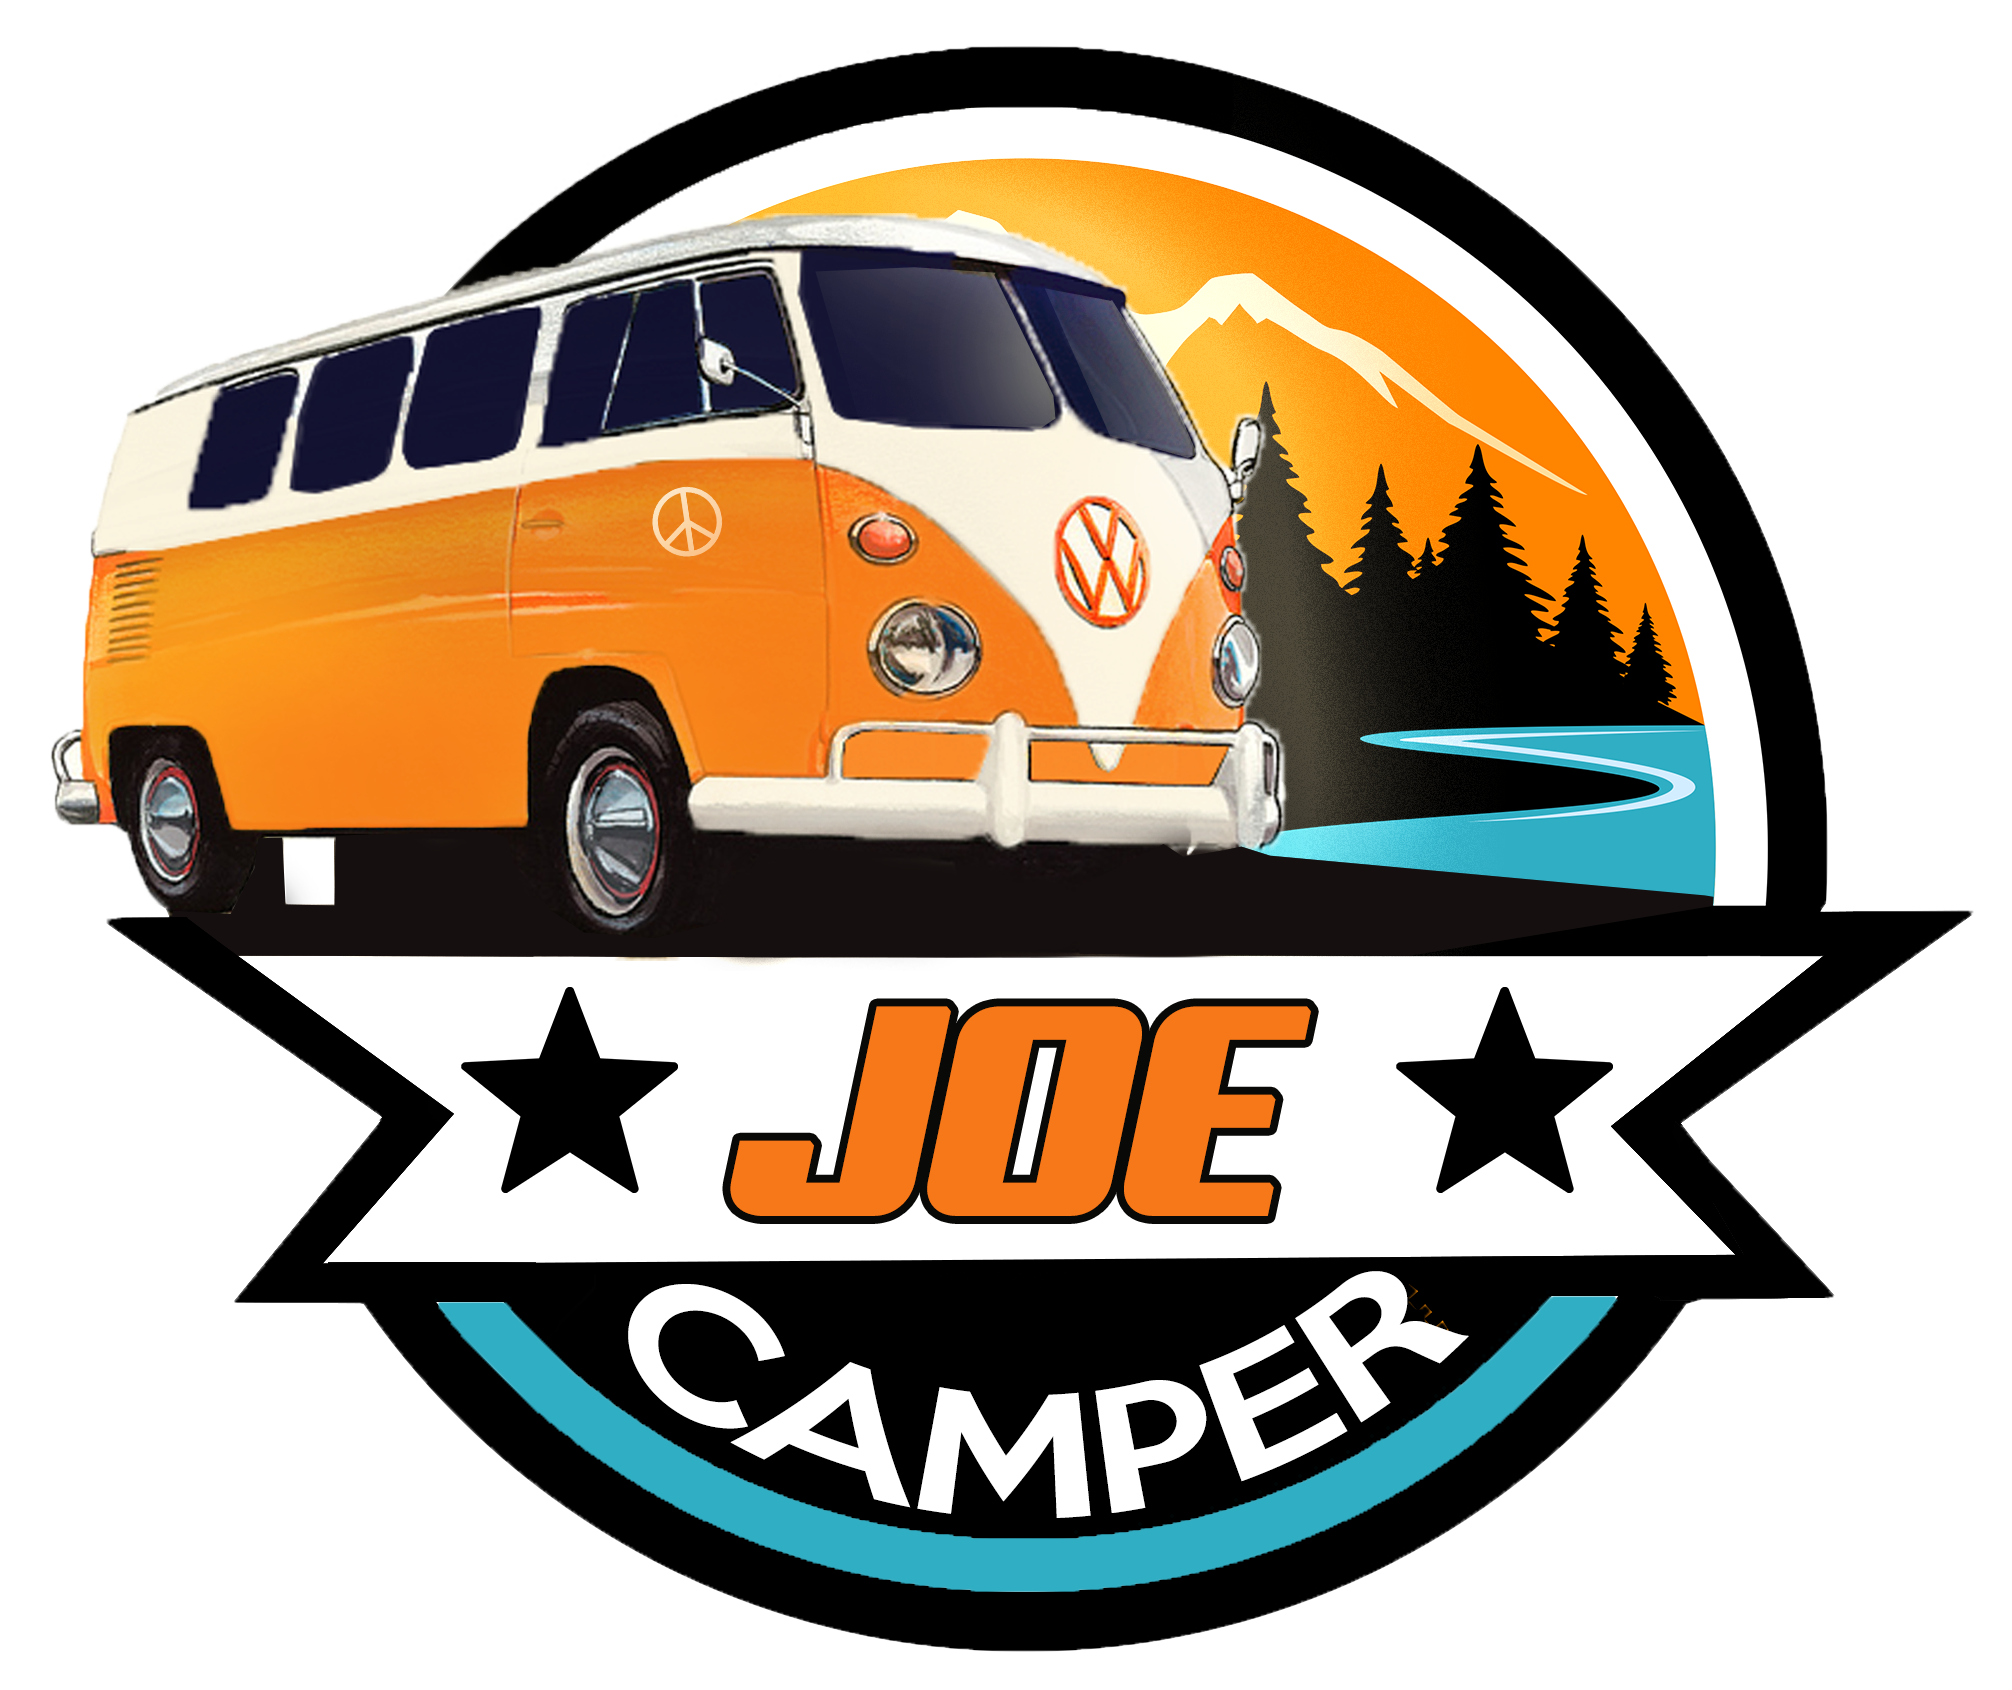 Joecamper